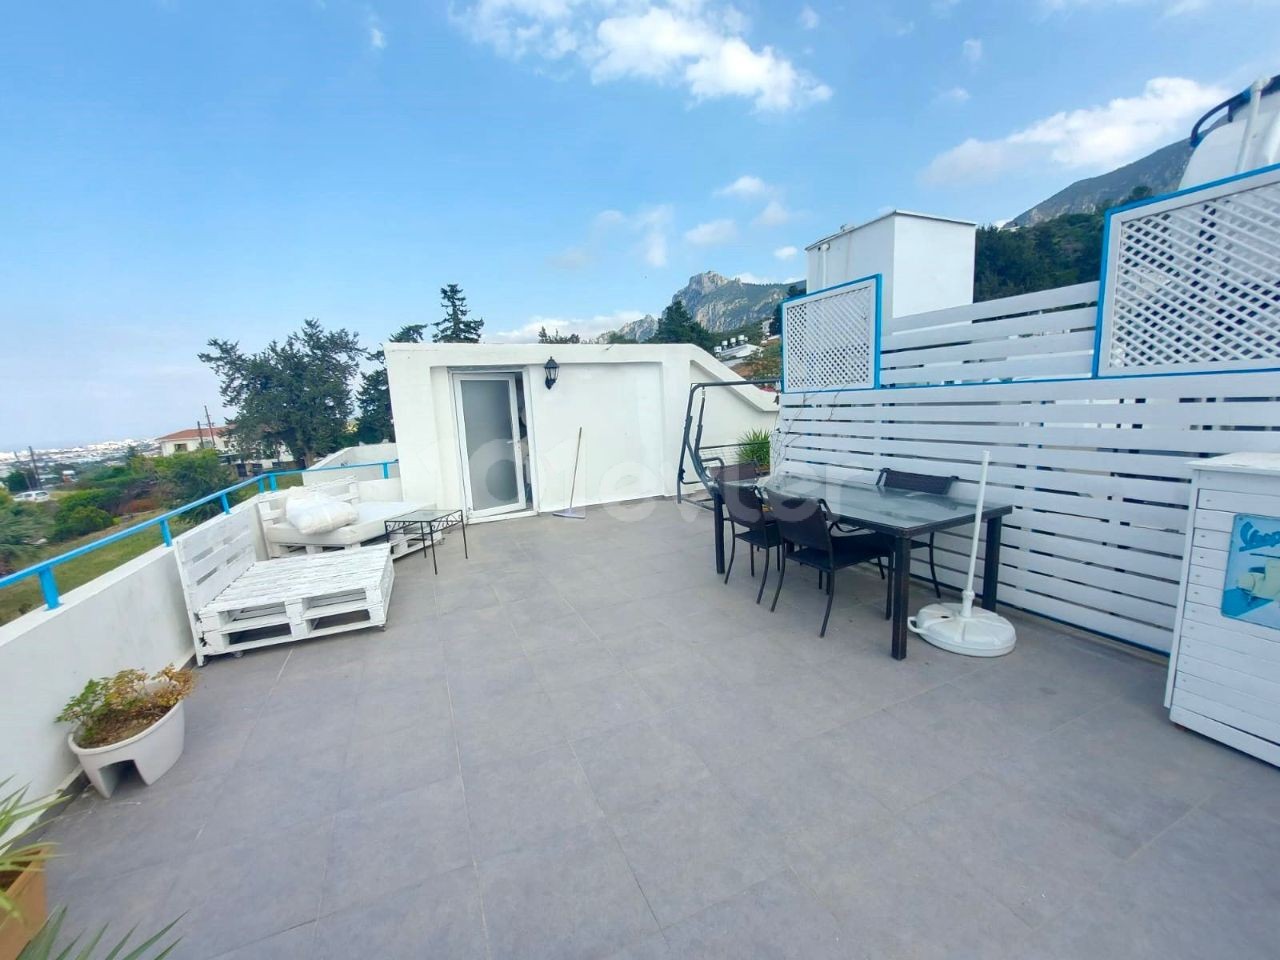 2+1 Luxus-Wohnung zum Verkauf in Edremit mit Pool und Dachterrasse in einer gepflegten Anlage mit Dachterrasse und toller Aussicht. . 